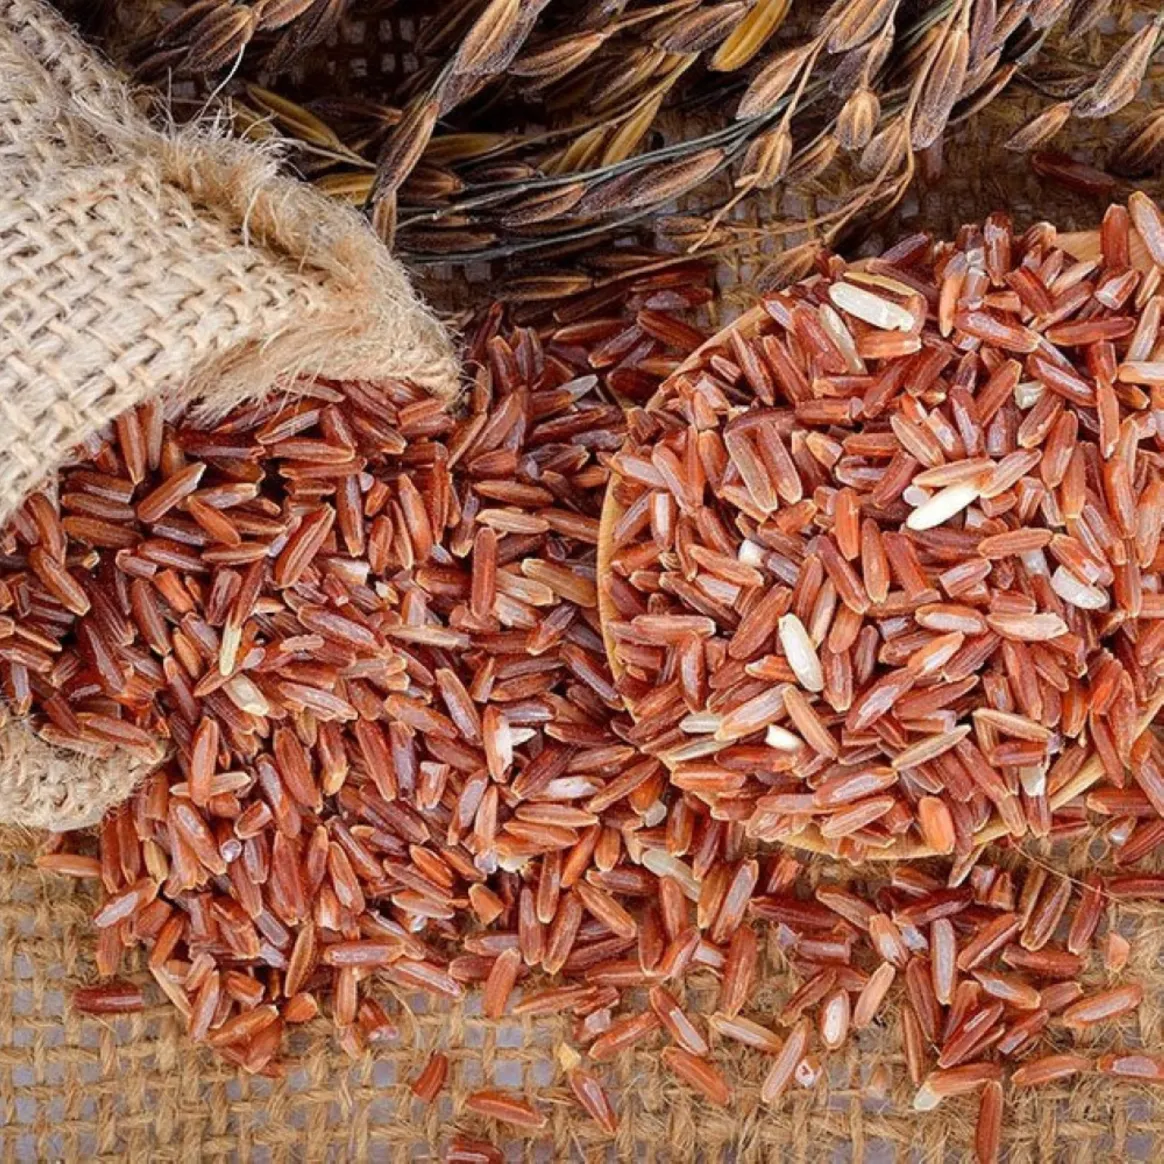 أهمية الأرز الحساوي الغذائية لما يحتويه من النشويات والبروتينات والفيتامينات